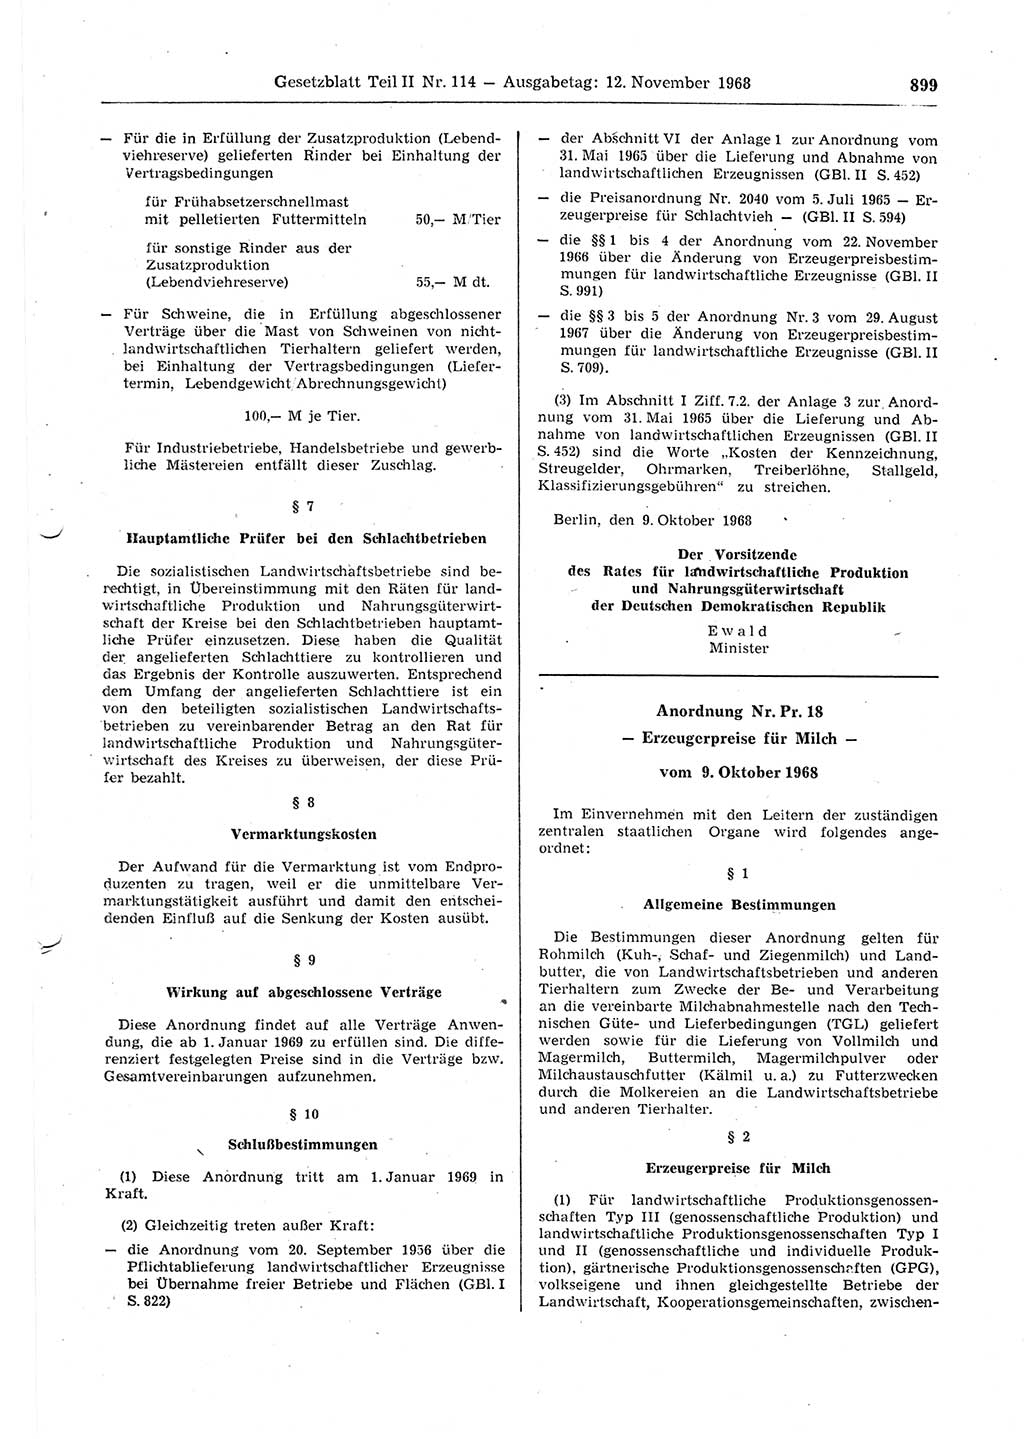 Gesetzblatt (GBl.) der Deutschen Demokratischen Republik (DDR) Teil ⅠⅠ 1968, Seite 899 (GBl. DDR ⅠⅠ 1968, S. 899)